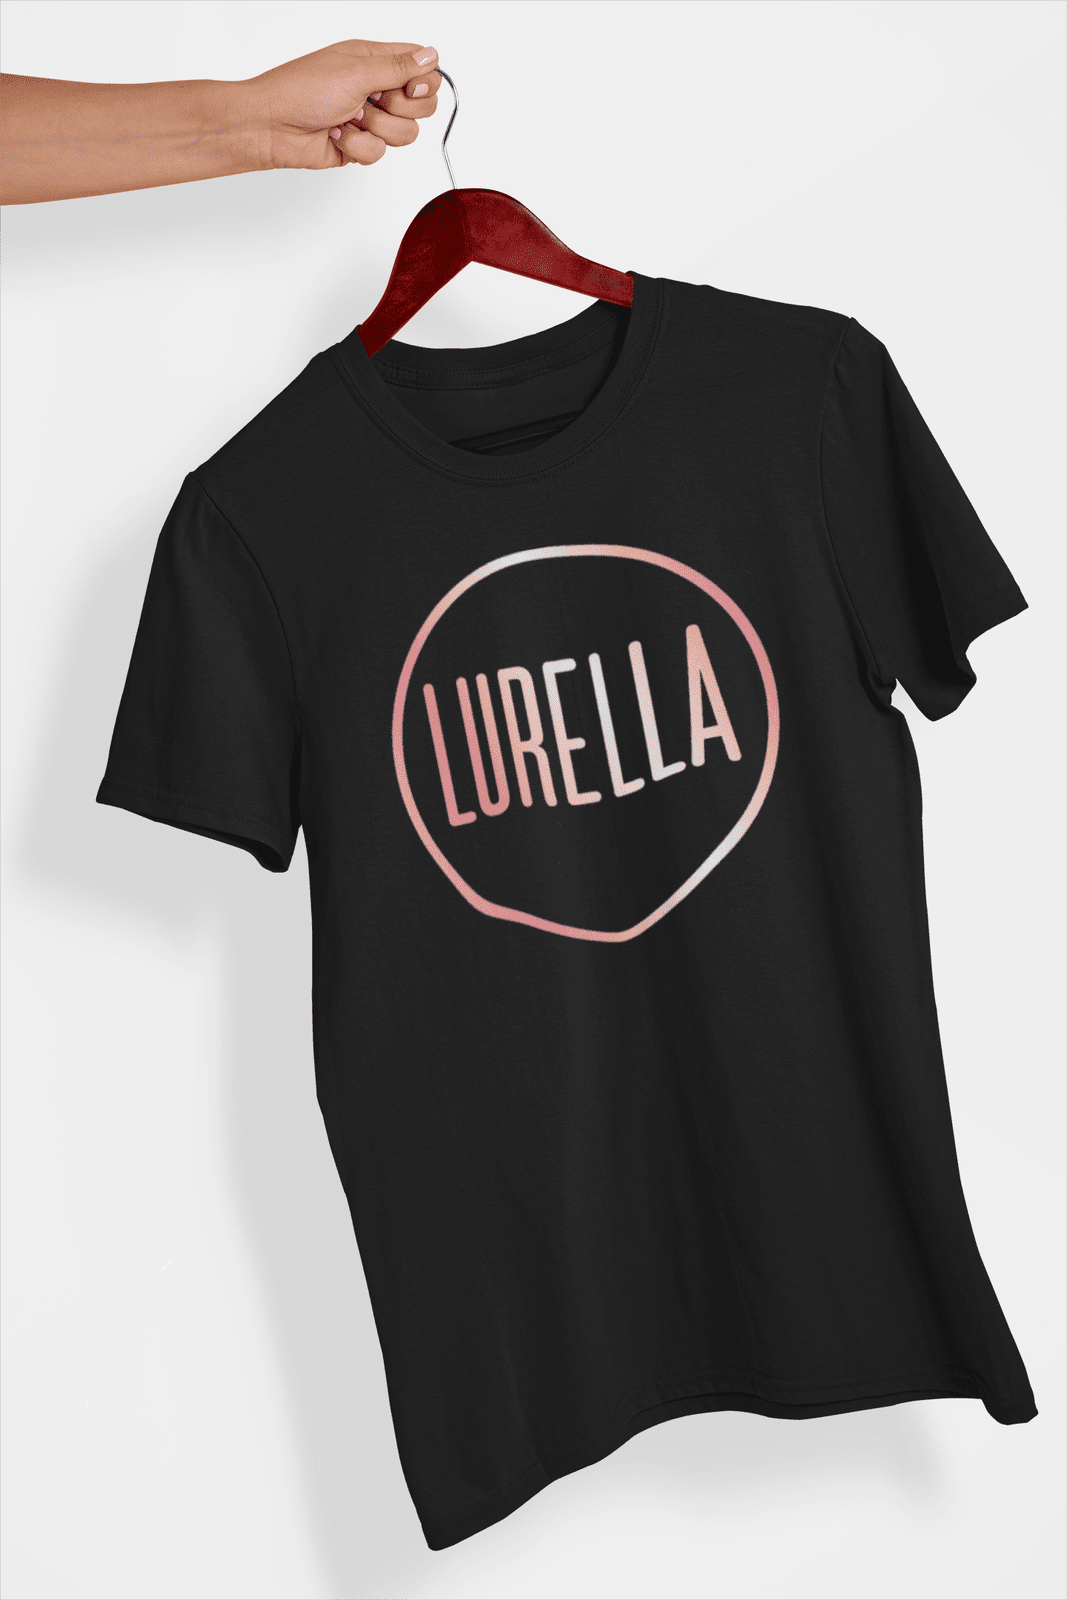 Lurella T-Shirt